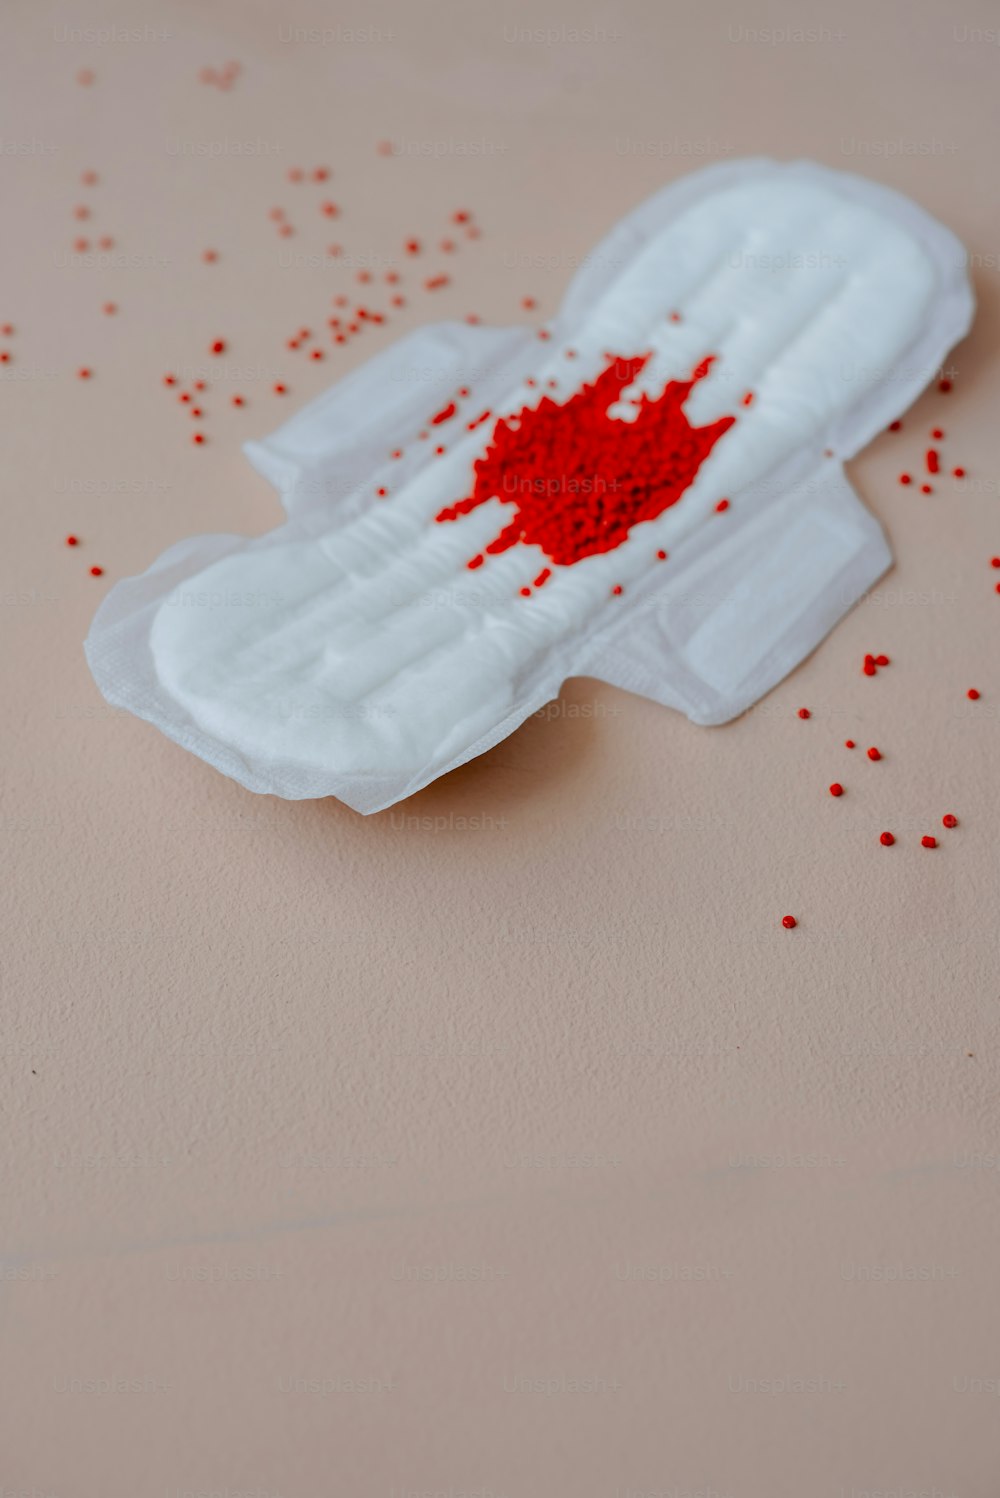 un pezzo di carta bianca con spruzzate rosse su di esso